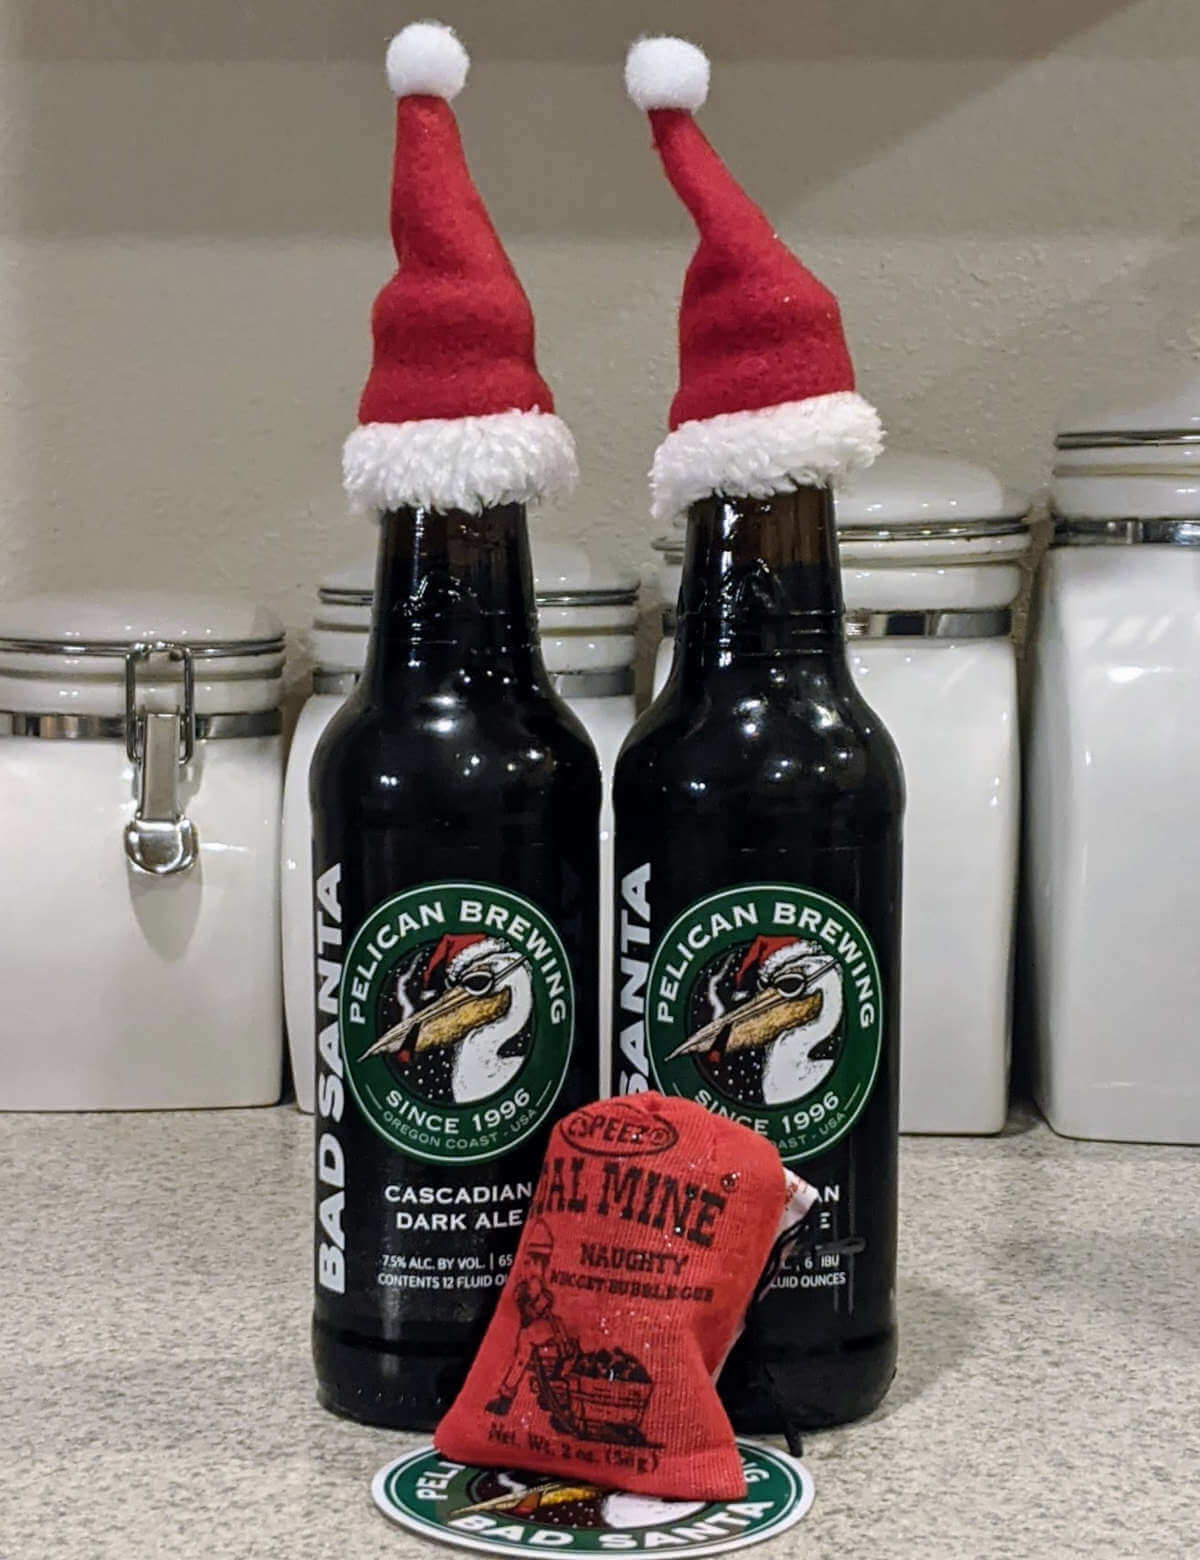 Received: Pelican Brewing Bad Santa Cascadian Dark Ale